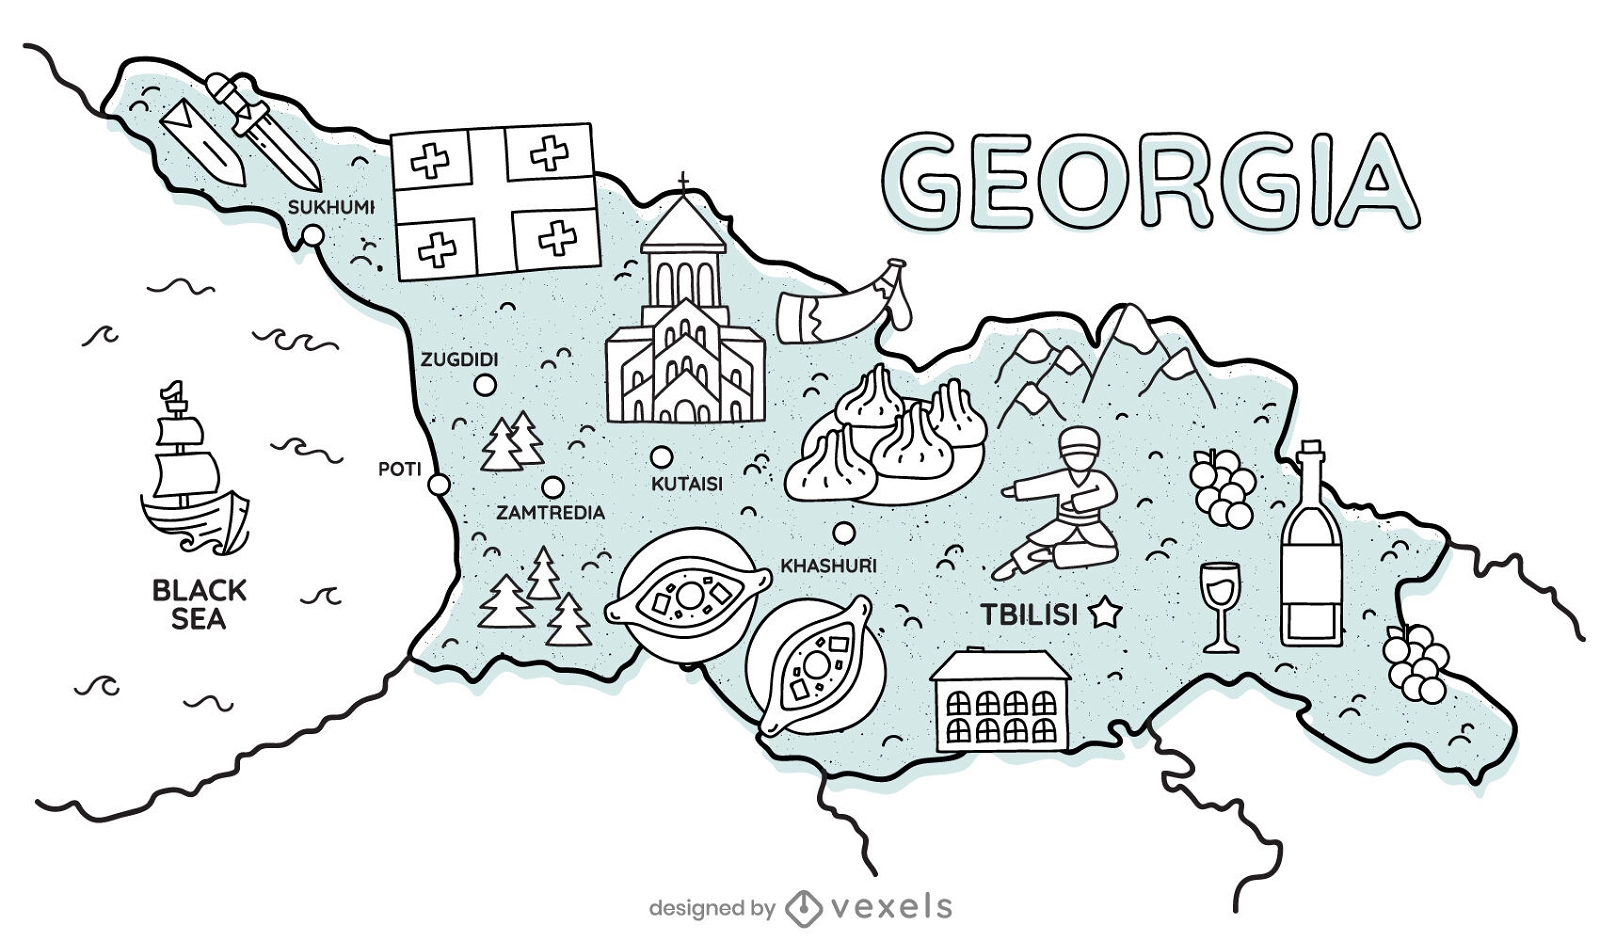 Georgia cultural map